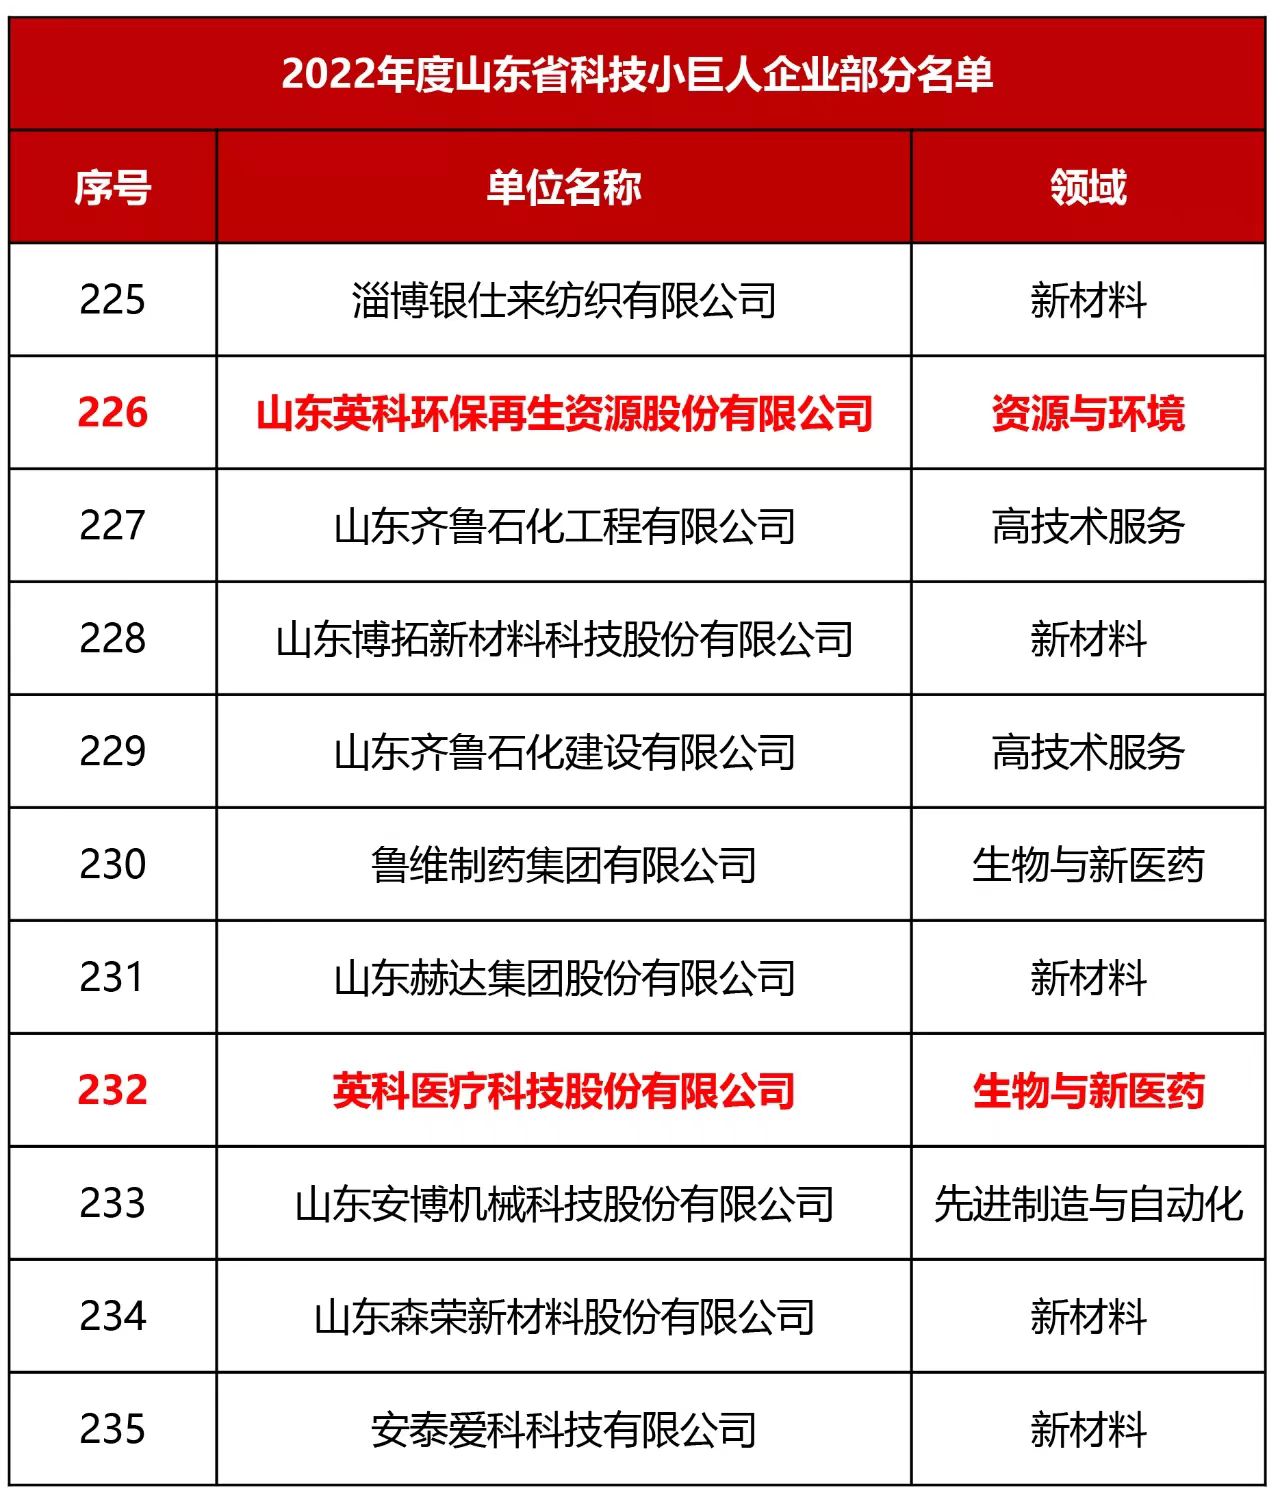 2022年度山東省科技小巨人企業部分名單